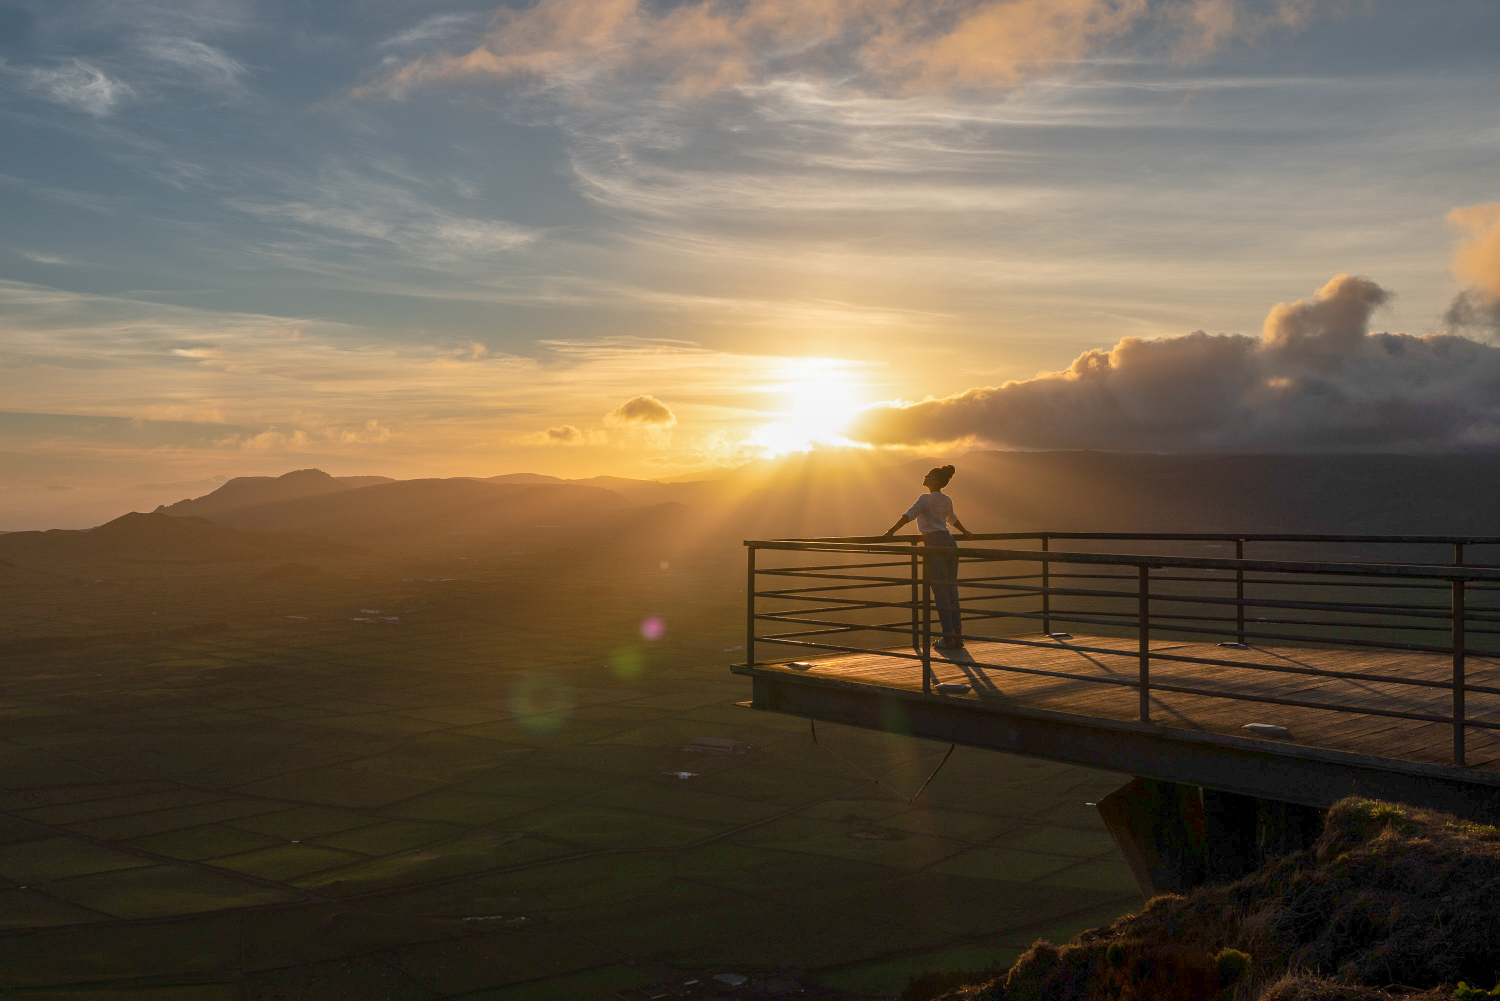  Serra do Cume Viewpoint, Terceira Island